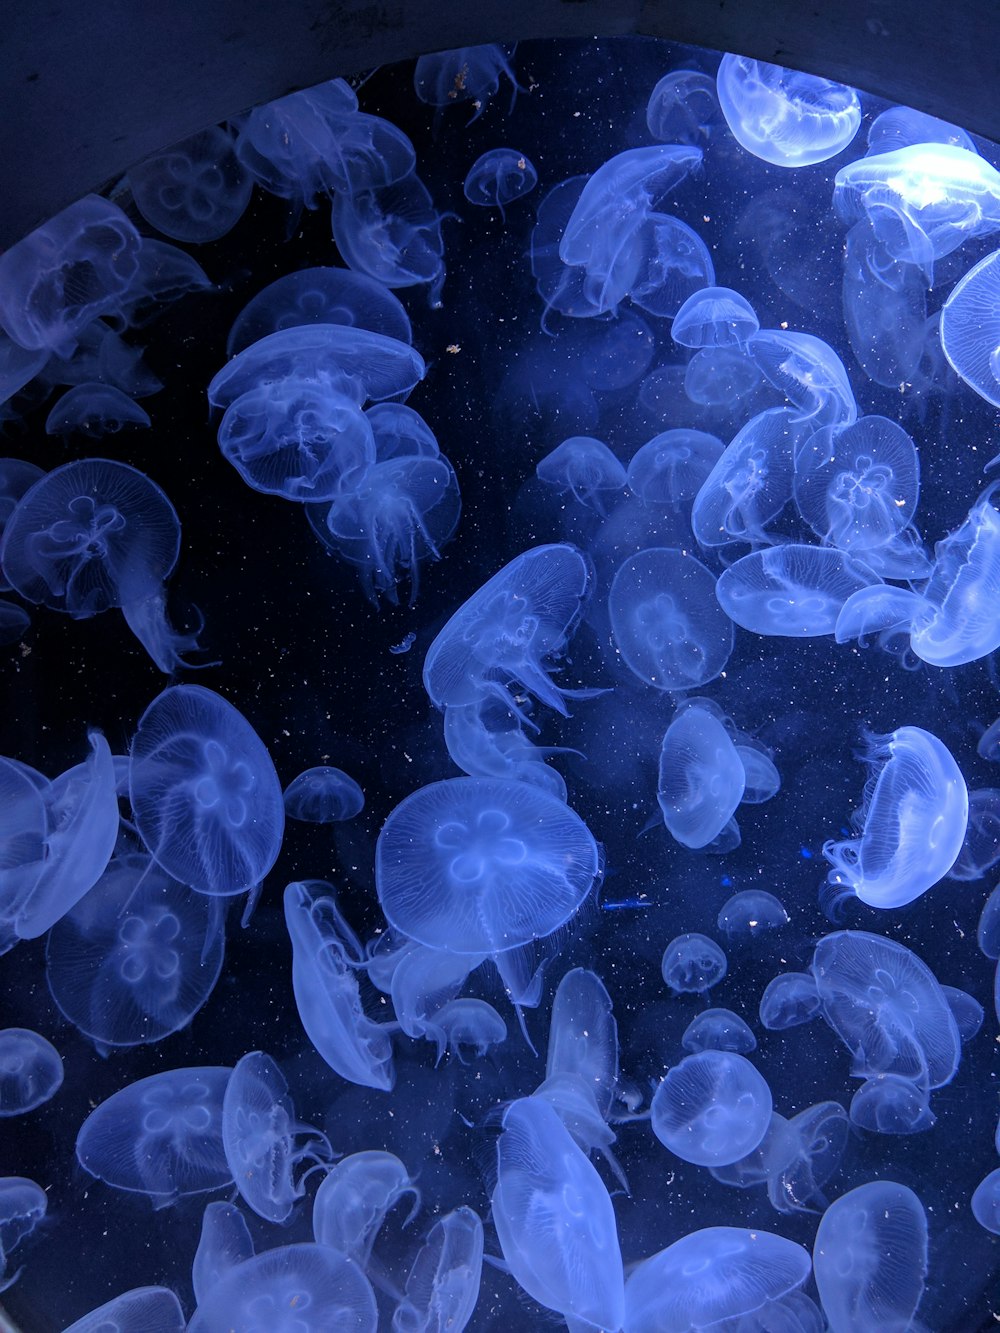 Cliché macro de méduses